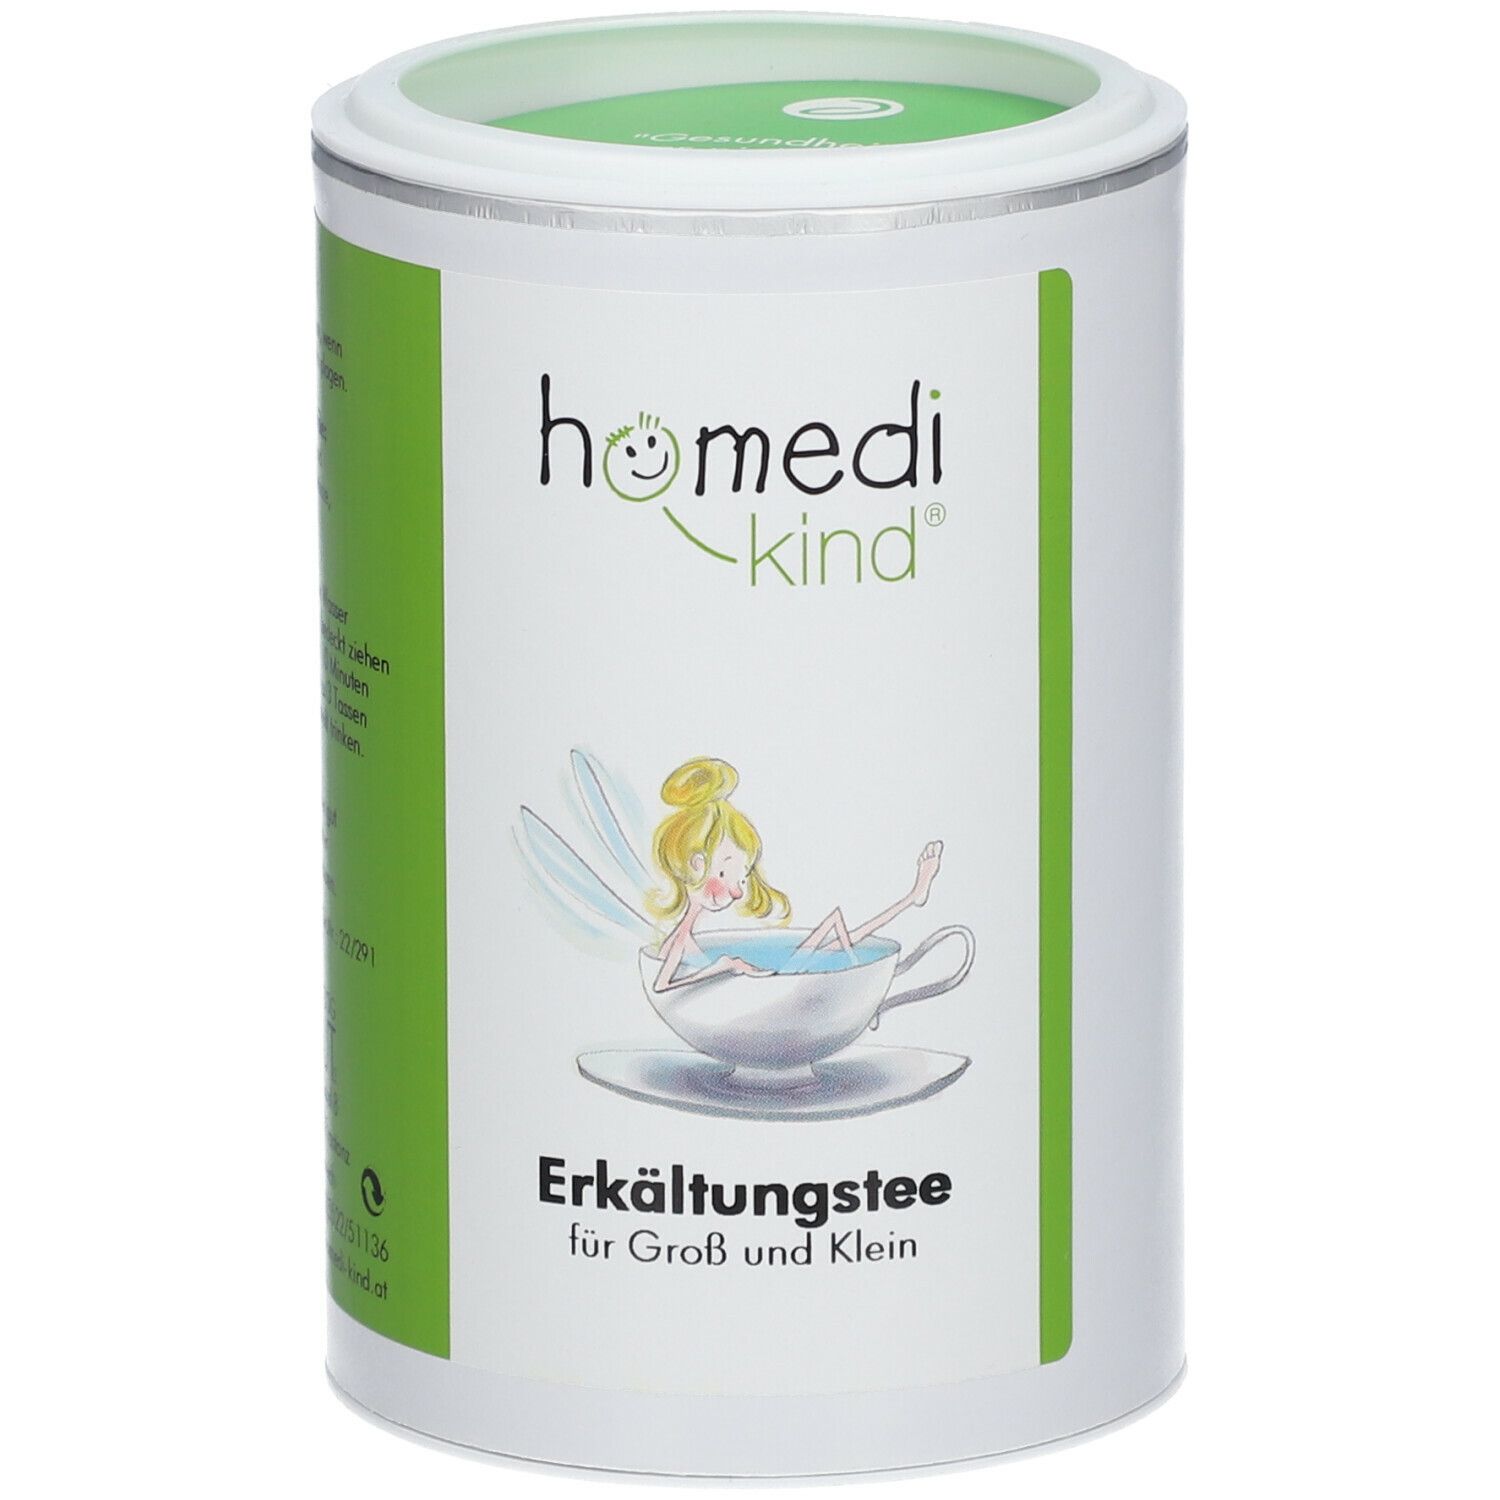 Image of homedi-kind® Erkältungstee